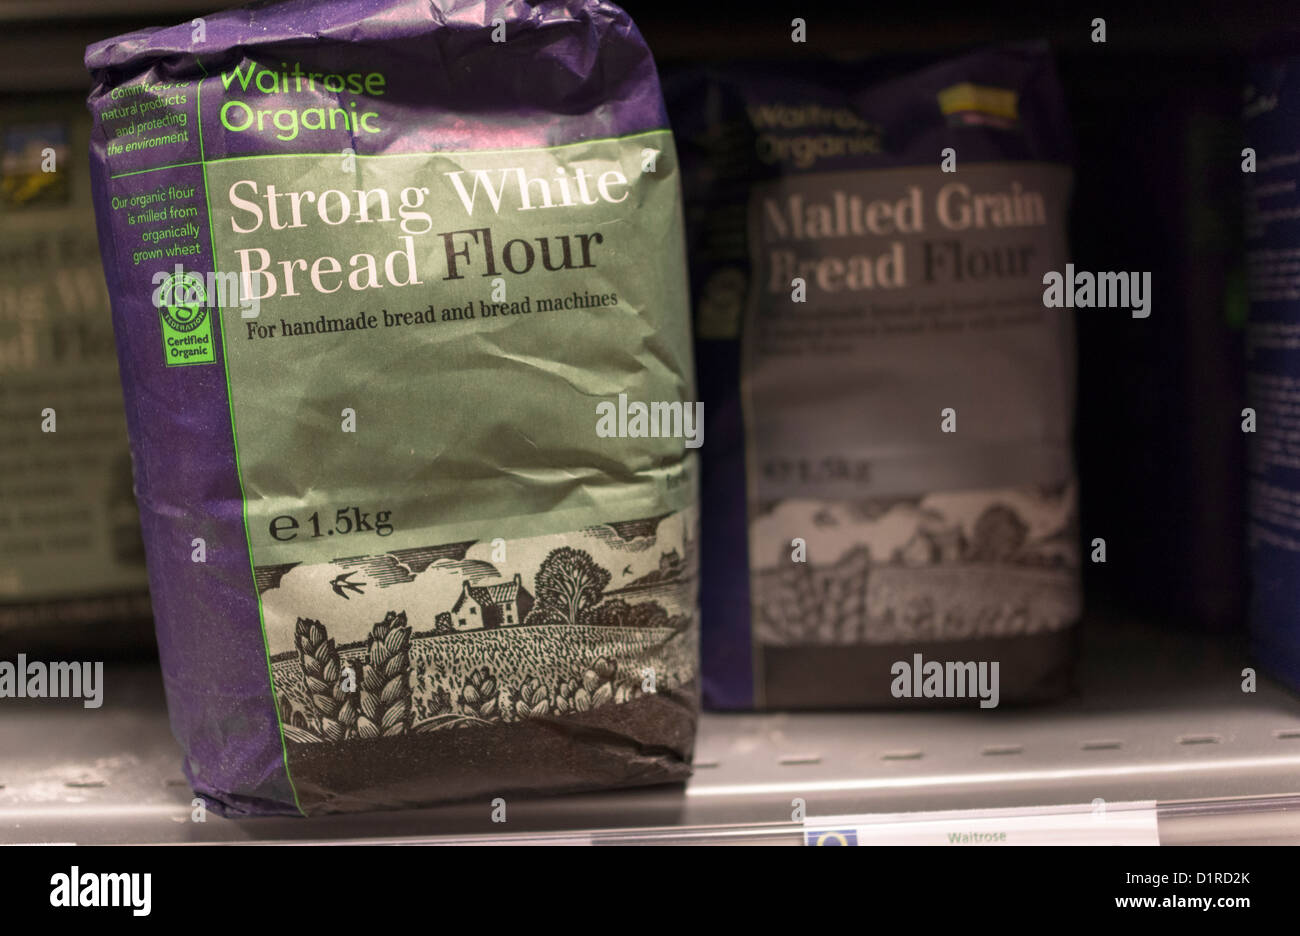 Una bolsa de fuerte blanco ecológico Waitrose harina para hacer pan casero. Foto de stock